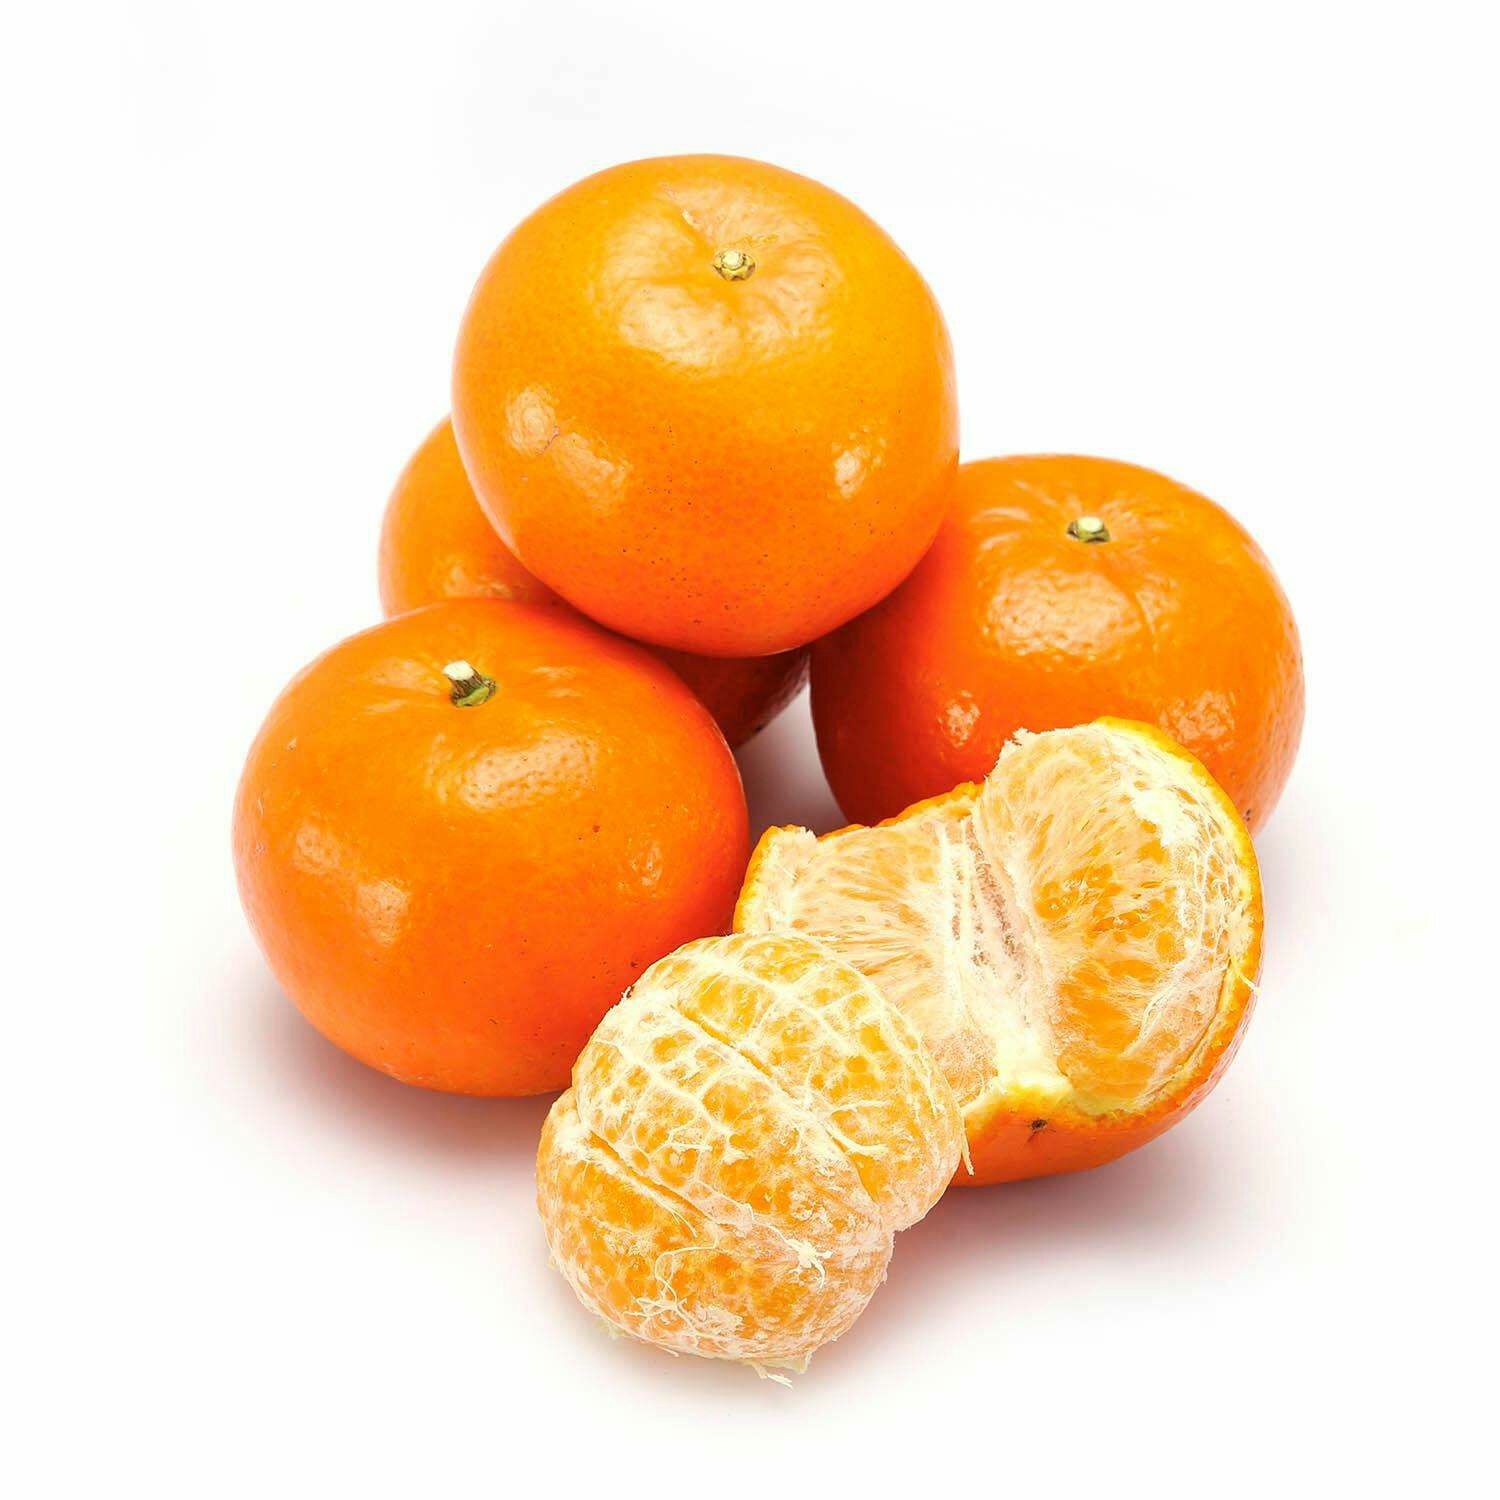 我种的沃柑橘子个大,原来吃沃柑橘子有这么多好处,我竞然不知道